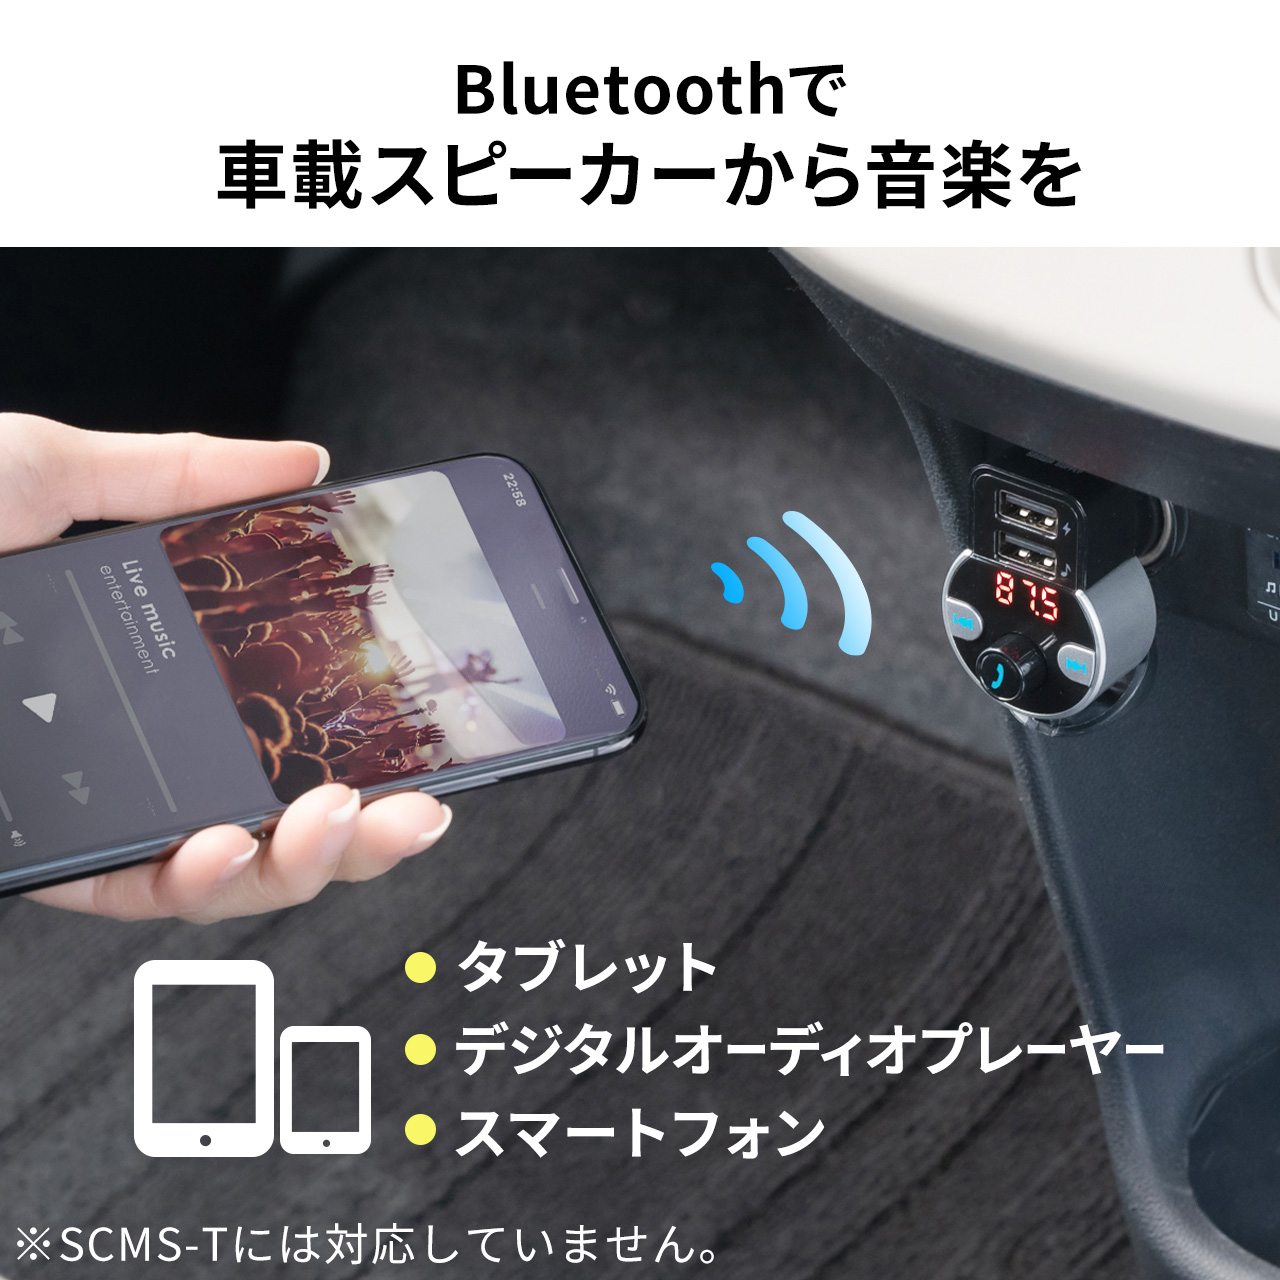 品多く FM トランスミッター Bluetooth 充電器 Android ハンズフリー 設定簡単 シガーソケット microSD iPhone USB充電  音楽再生 小型12V スマホ 車載 24V 内装用品